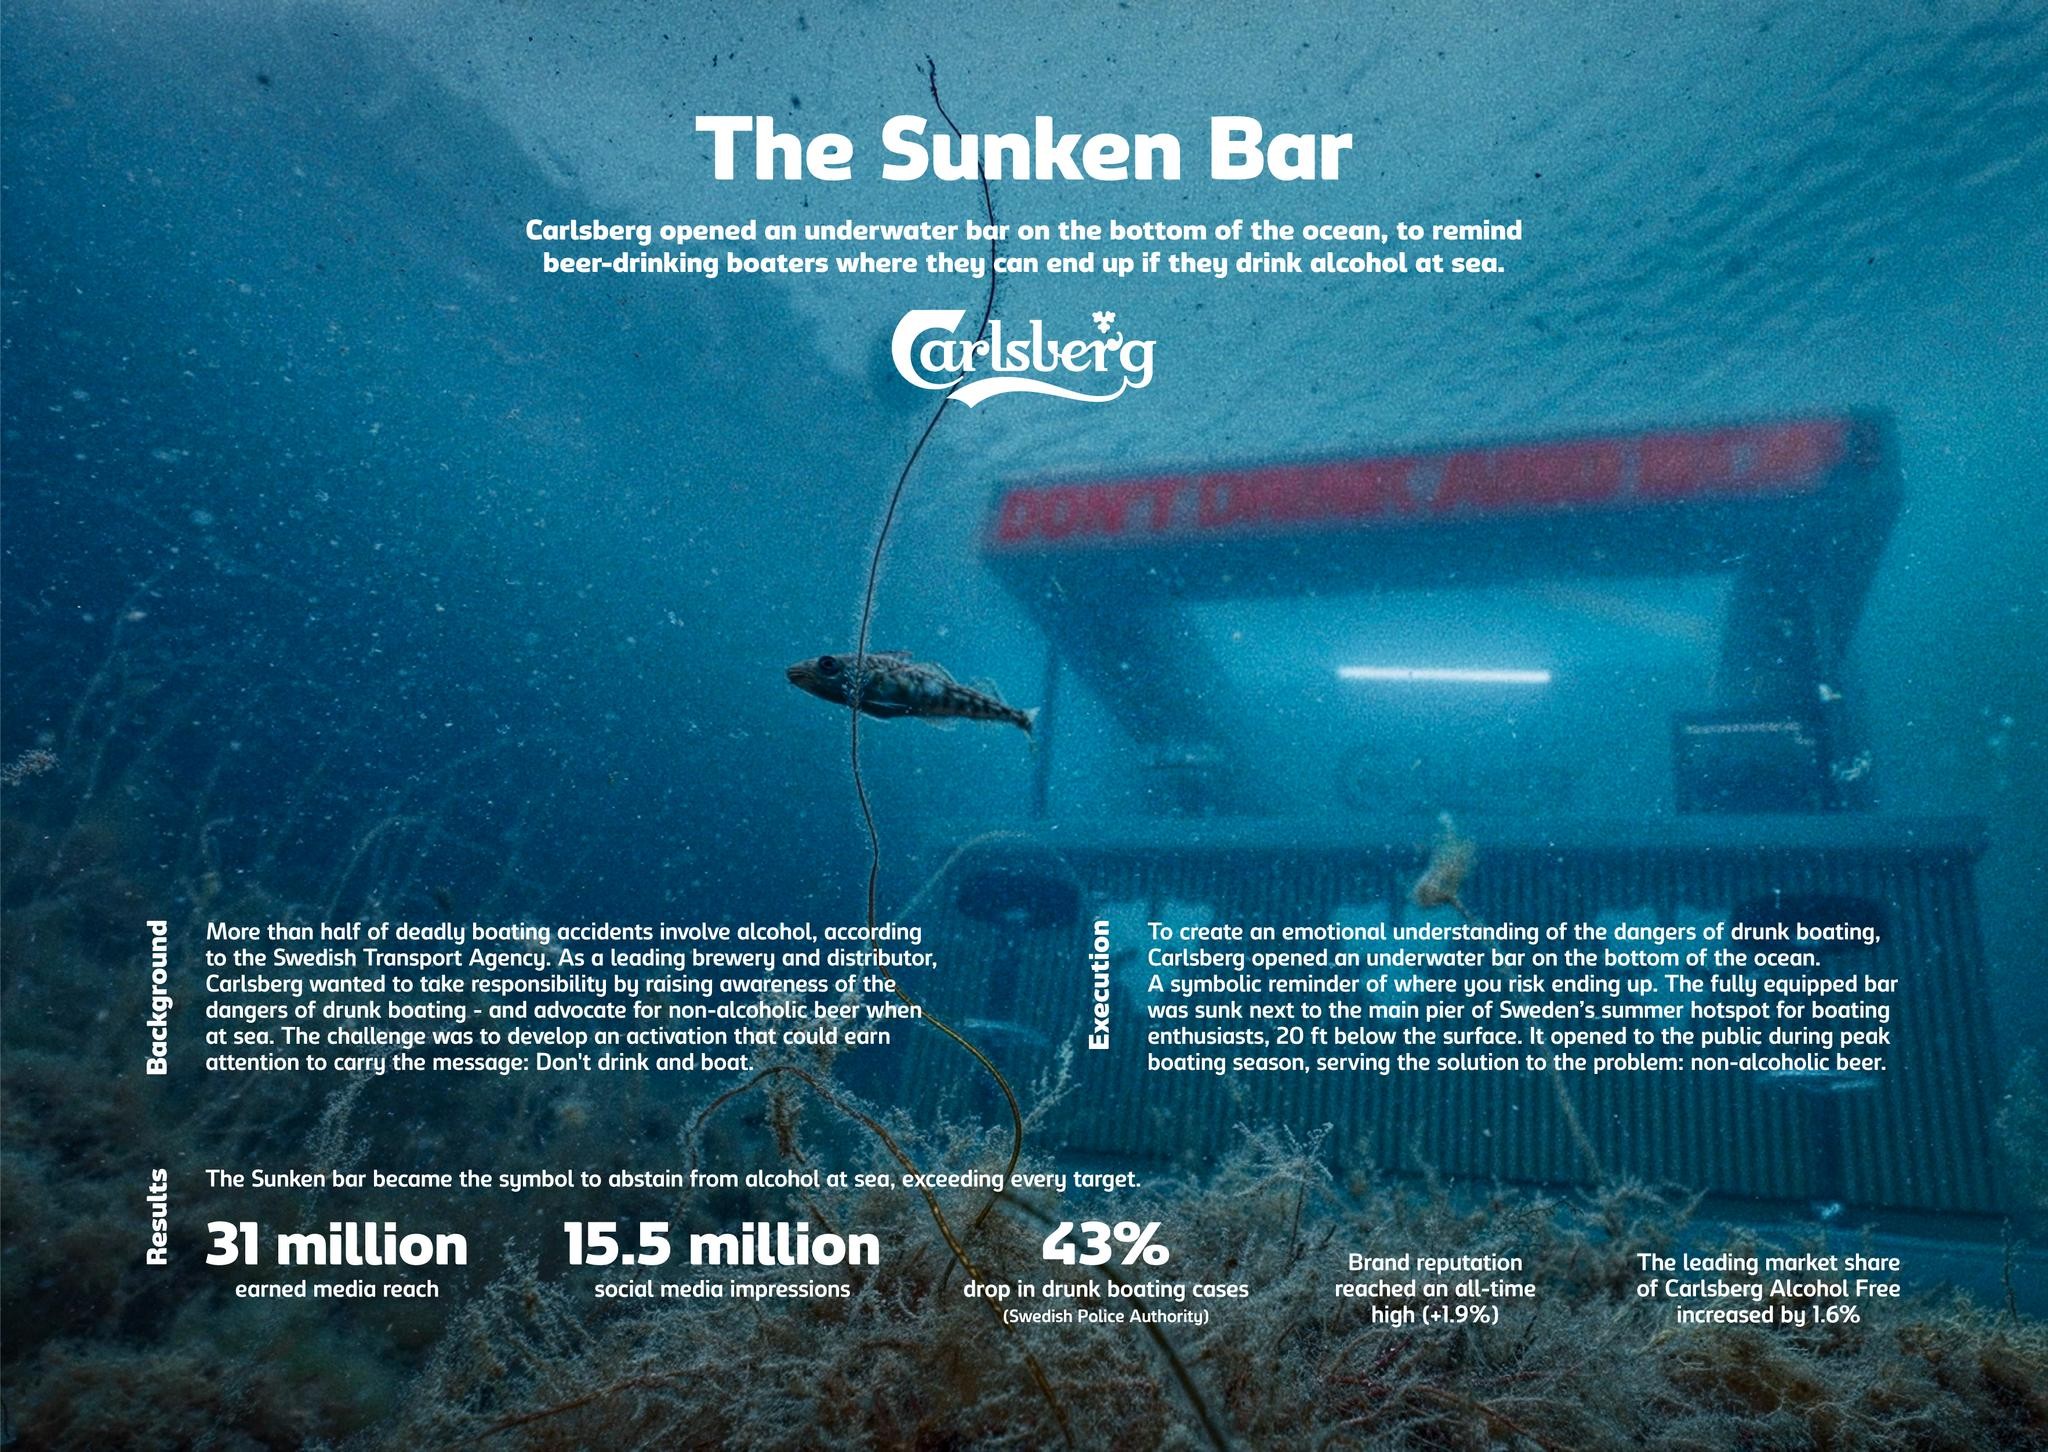 The Sunken Bar